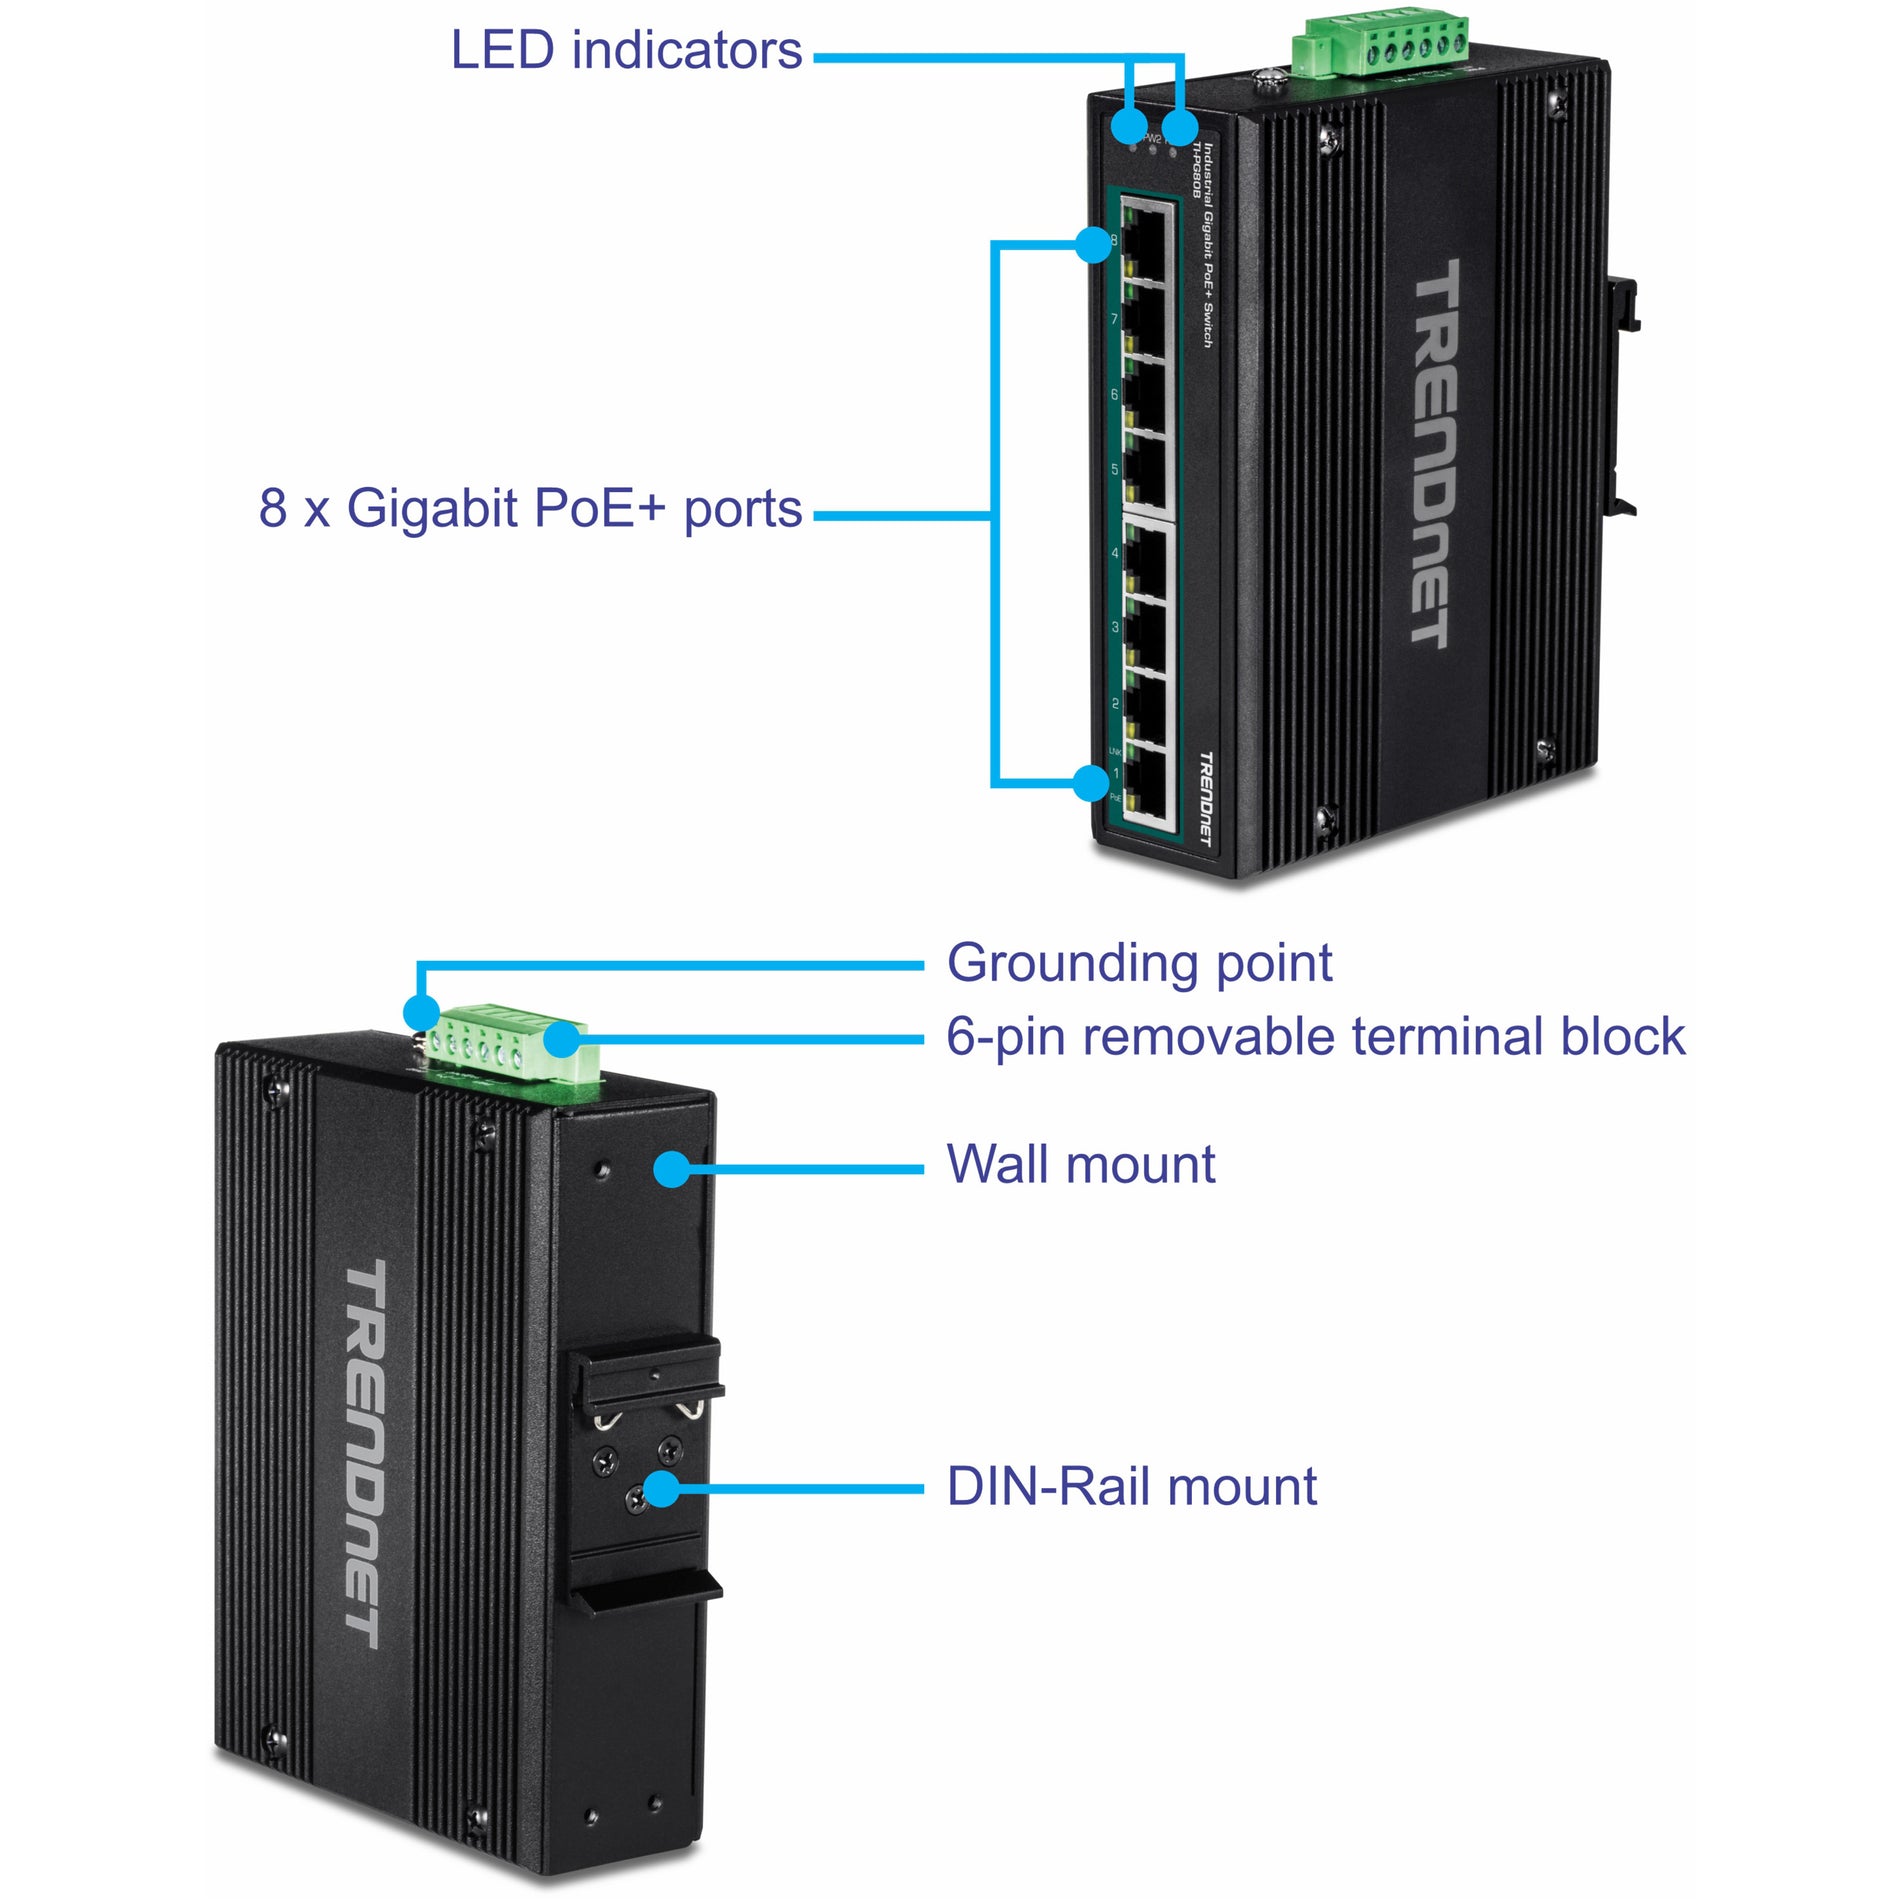 TRENDnet TI-PG80B 8-Port Commutateur Industriel Gigabit PoE+ sur Rail DIN Connectivité Réseau Fiable. Marque: TRENDnet